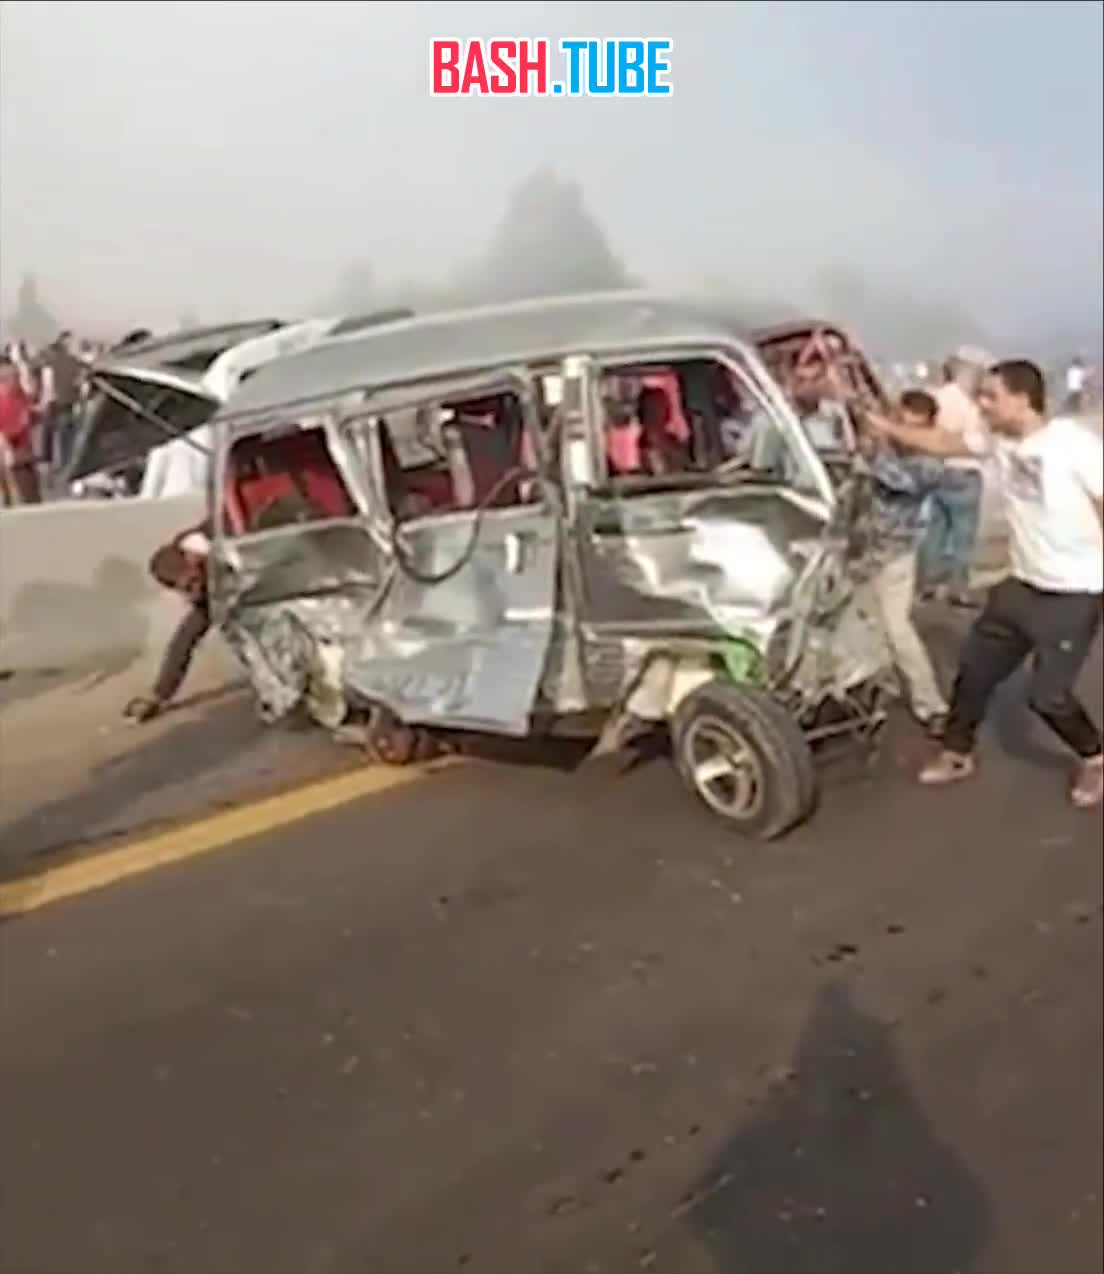  28 человек погибли в масштабном ДТП на пустынной дороге между Каиром и Александрией в Египте